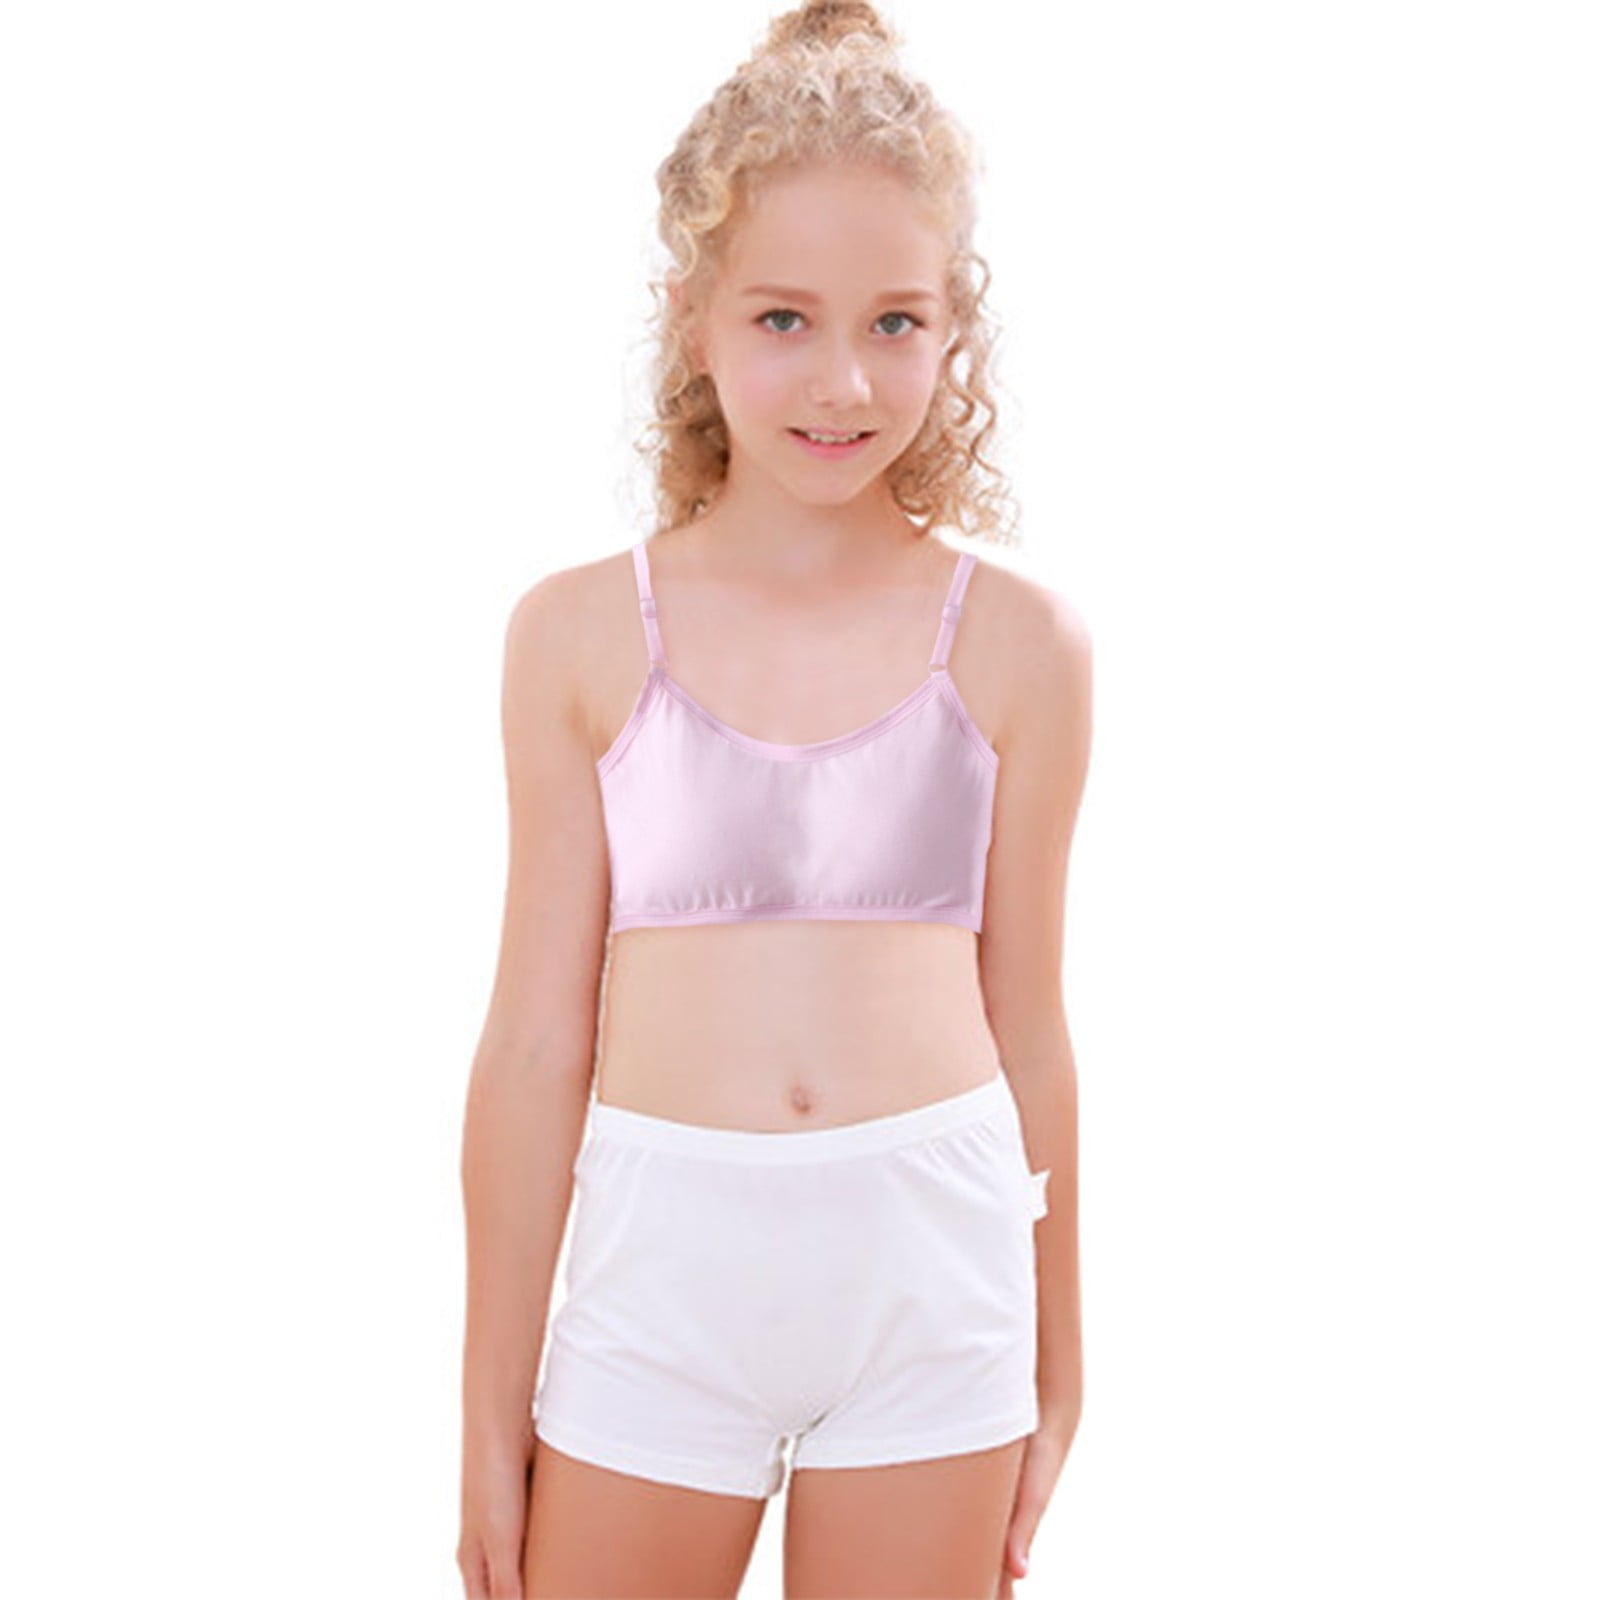 Training bra for girls Retro underwear for girls Teen girl's bra Pure  cotton underwear for children